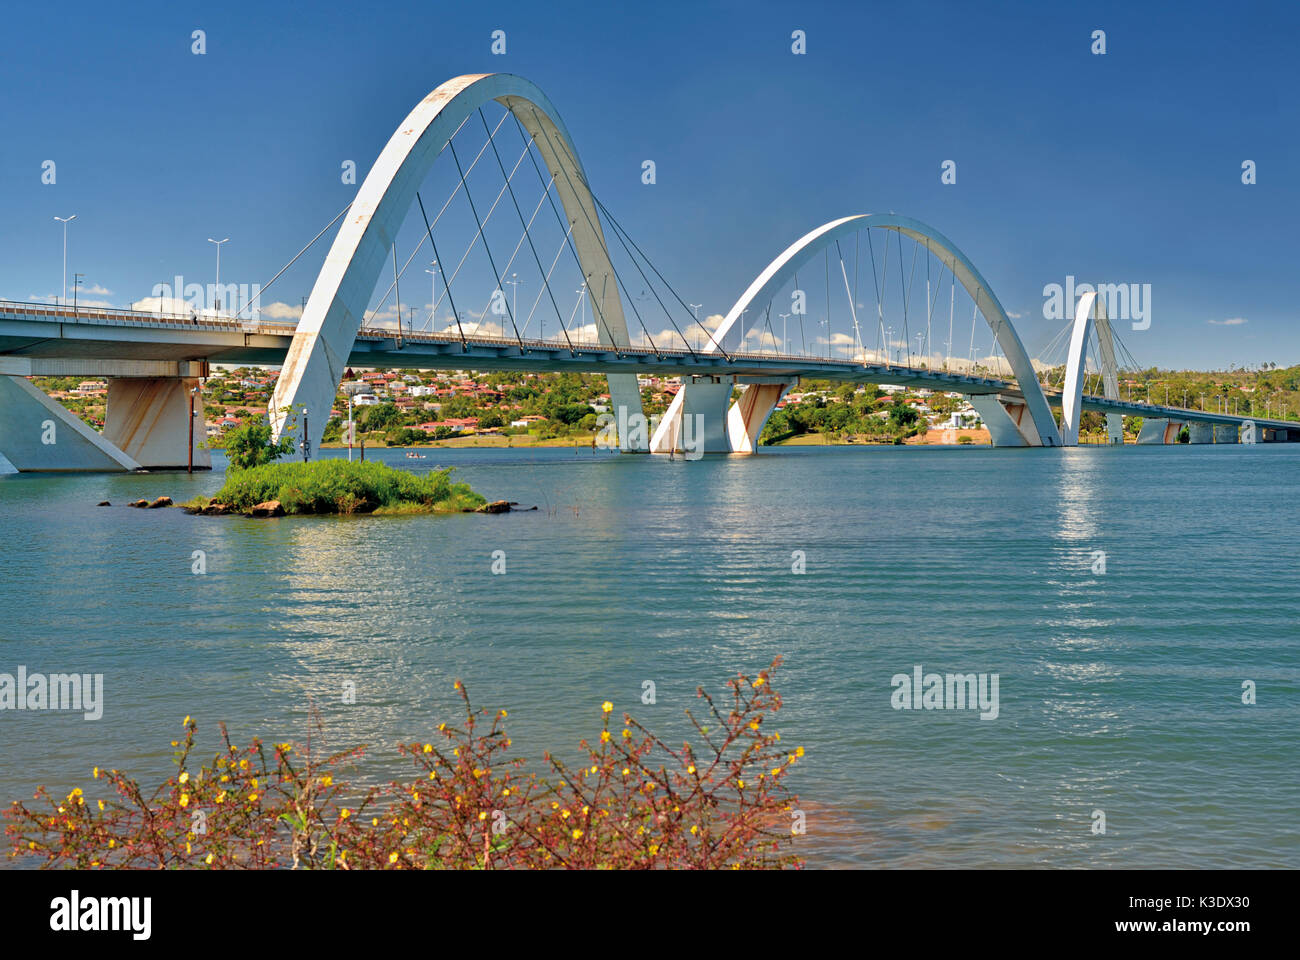 Brésil, Brésil, pont en arc sur le prix Juscelino Kubitschek, lac Paranoá Banque D'Images